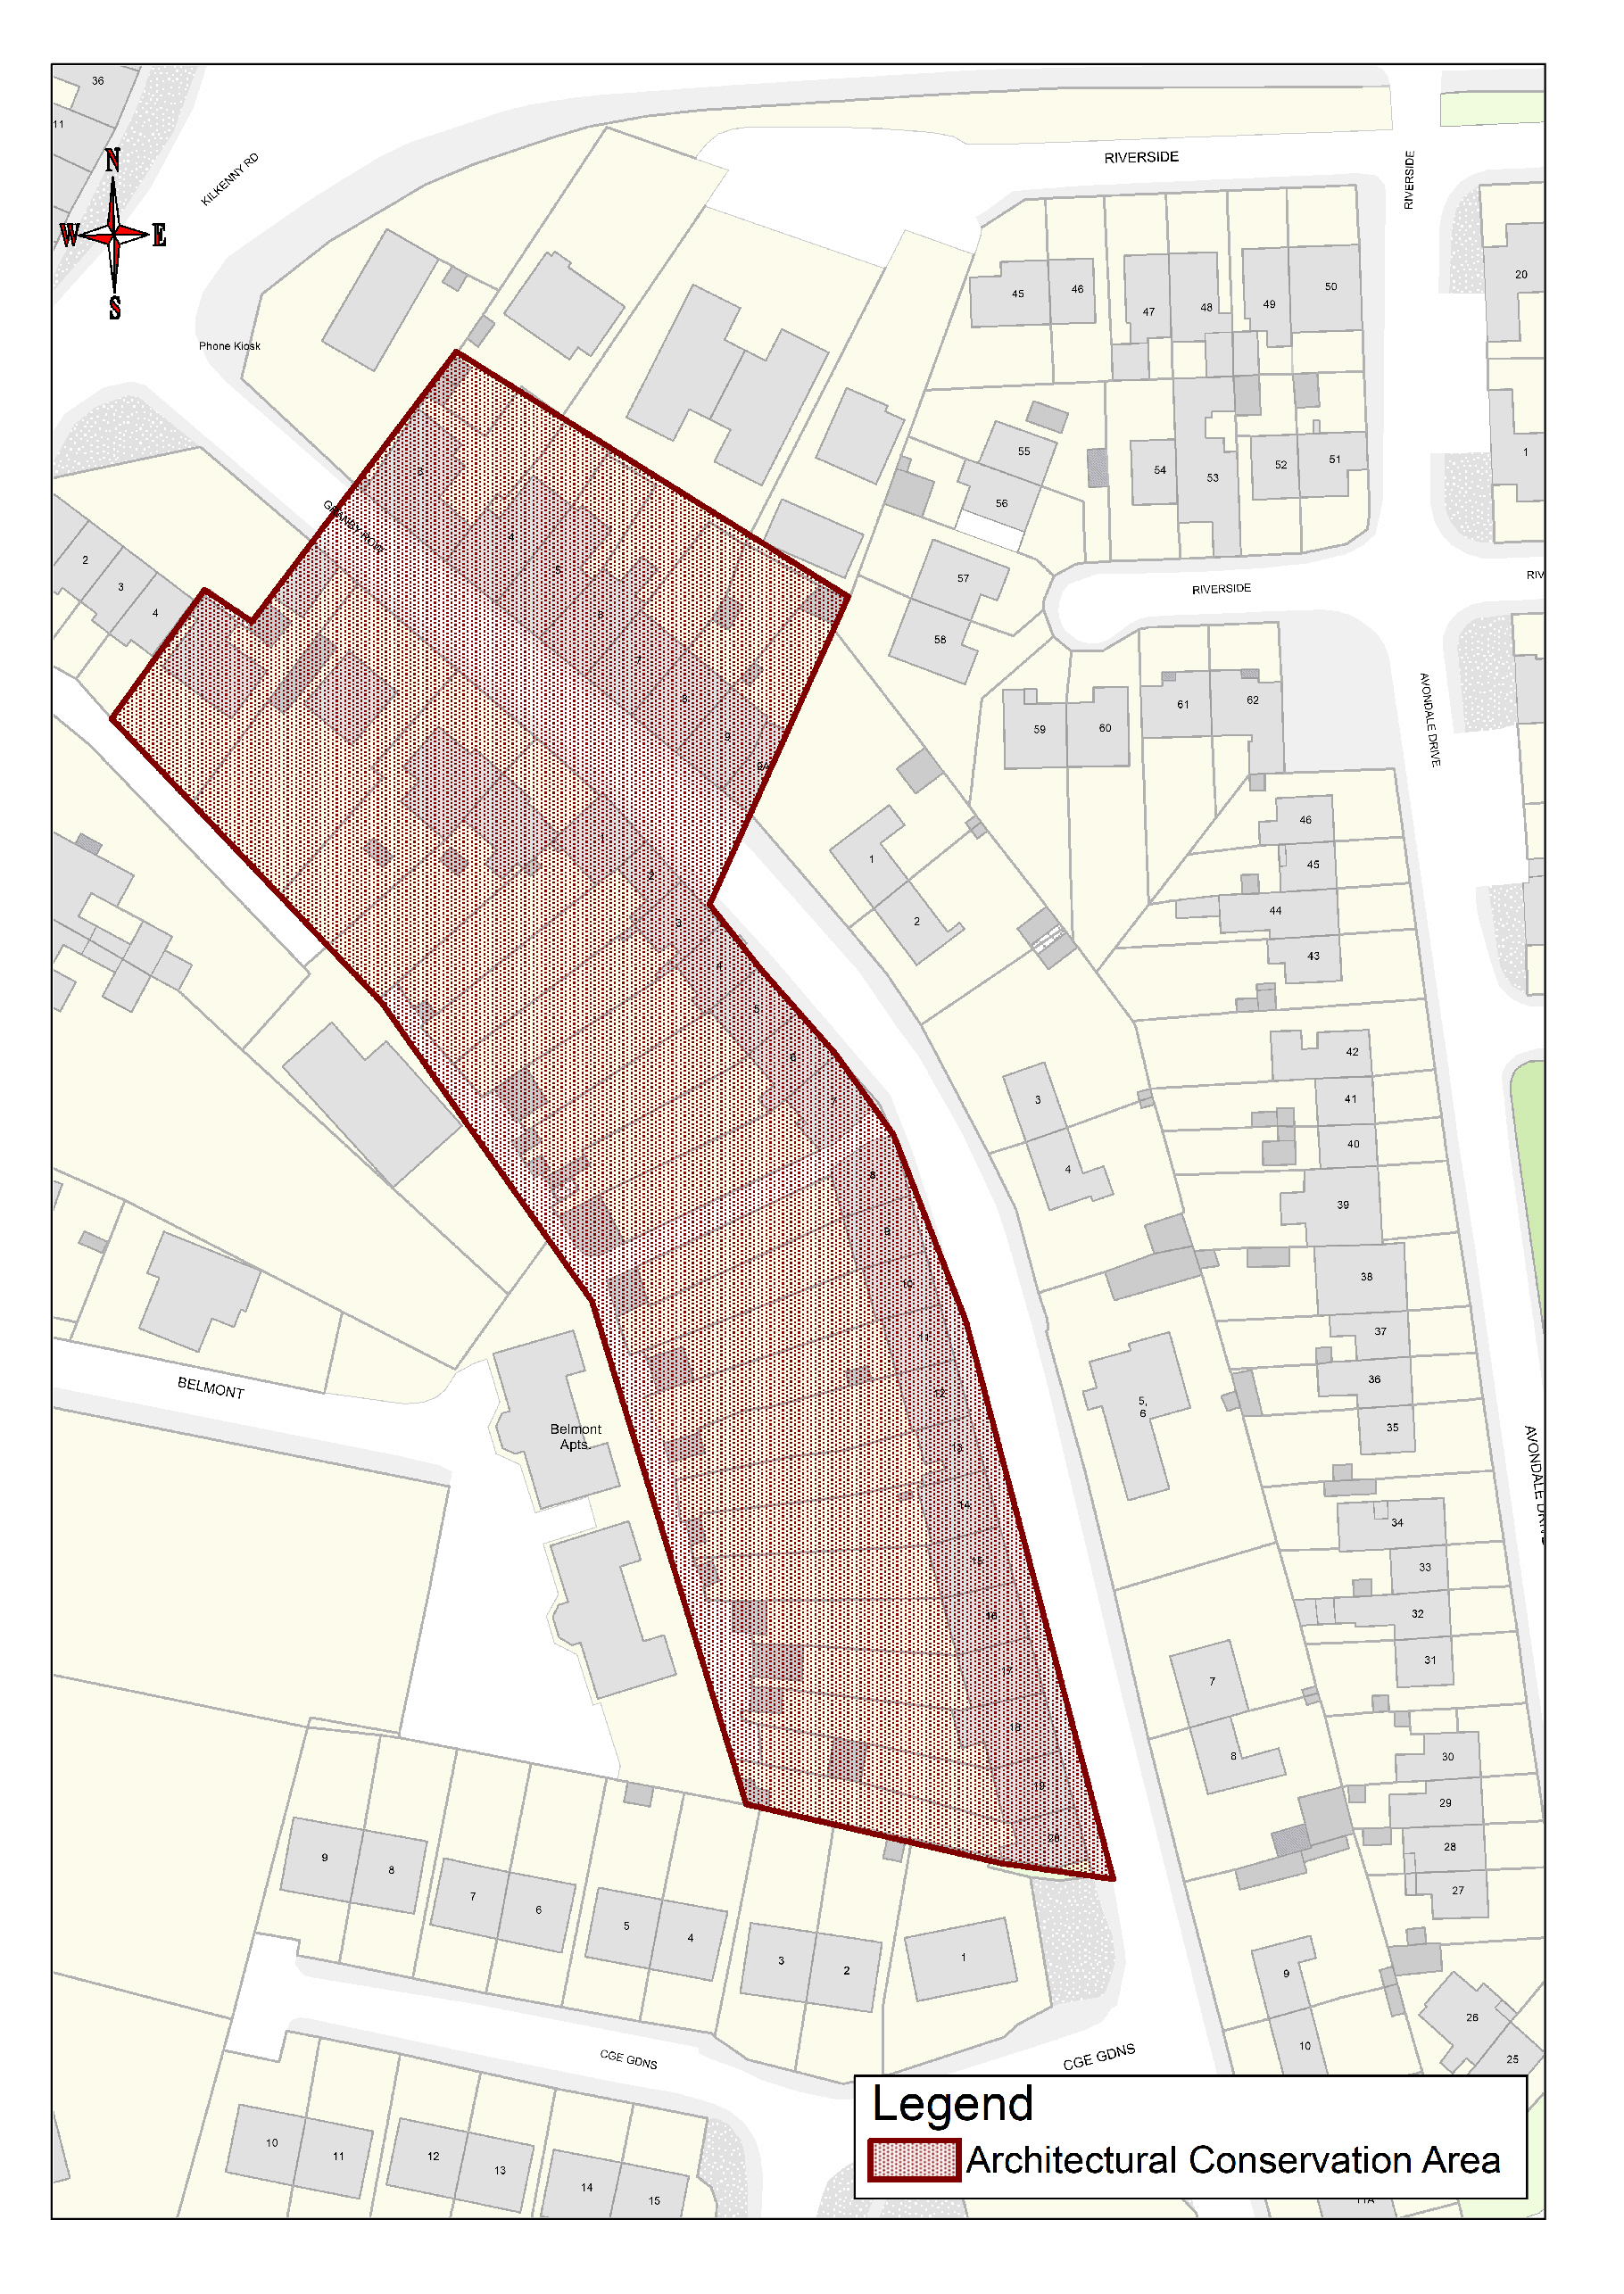  Map 9.3: Granby Row ACA               